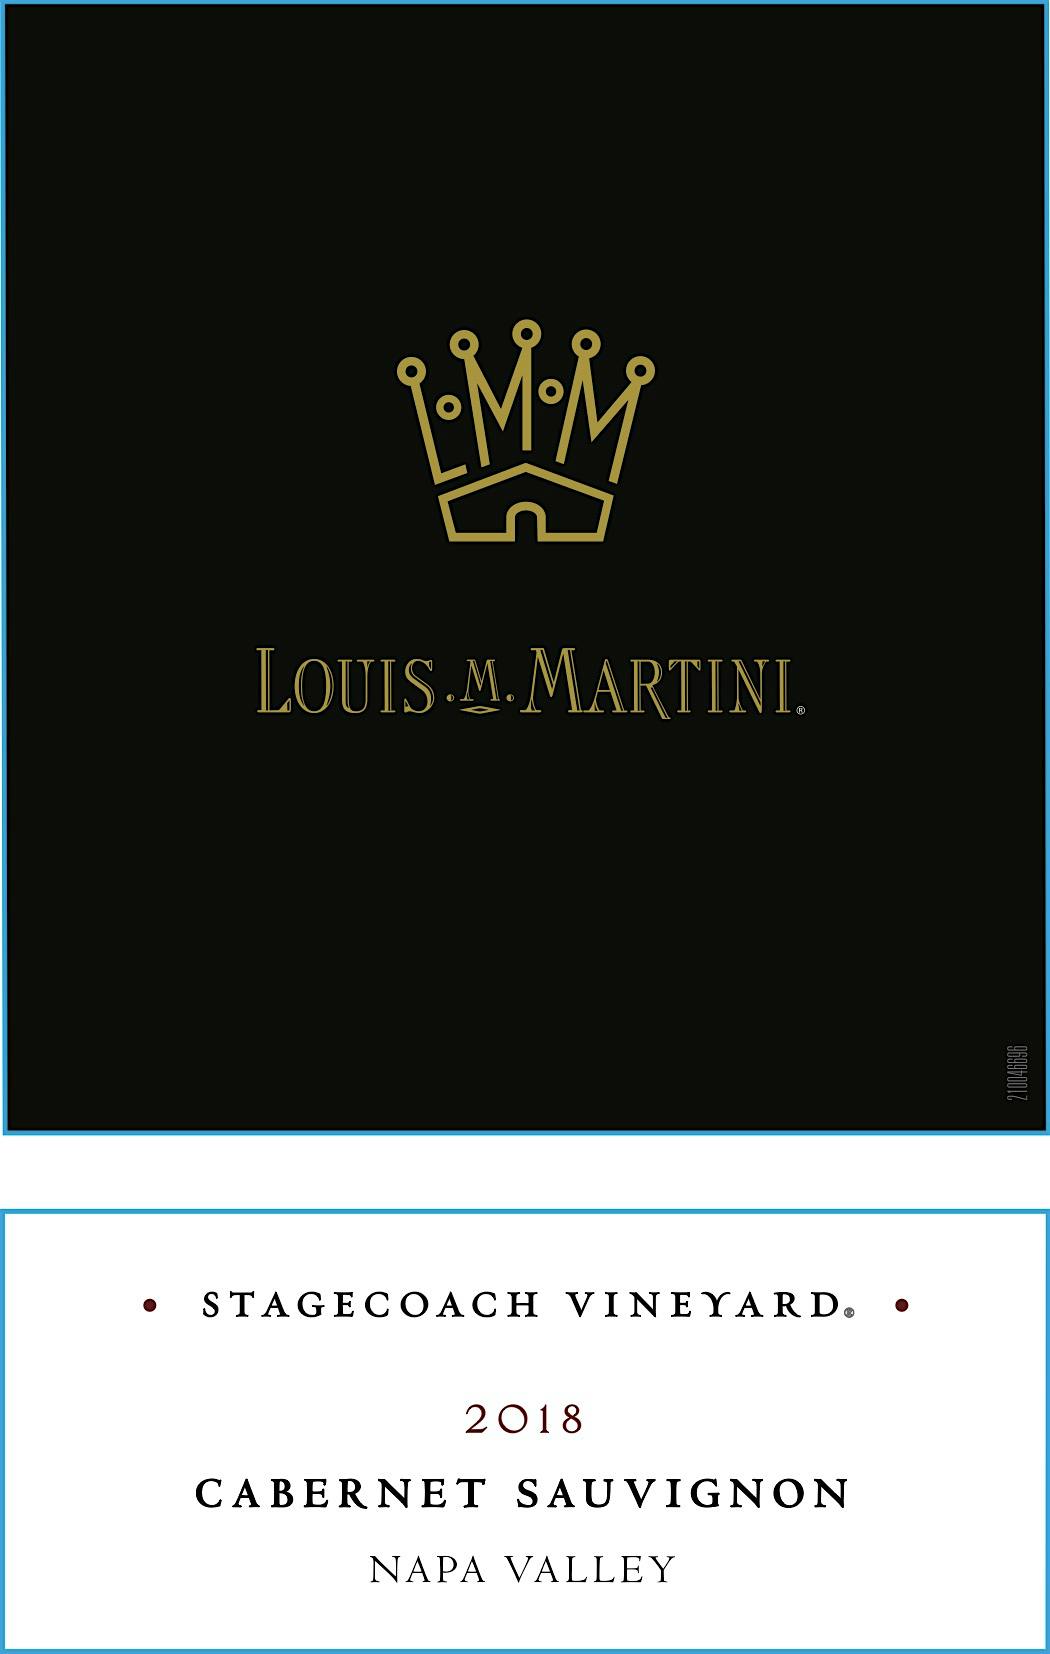 Label for Louis M. Martini